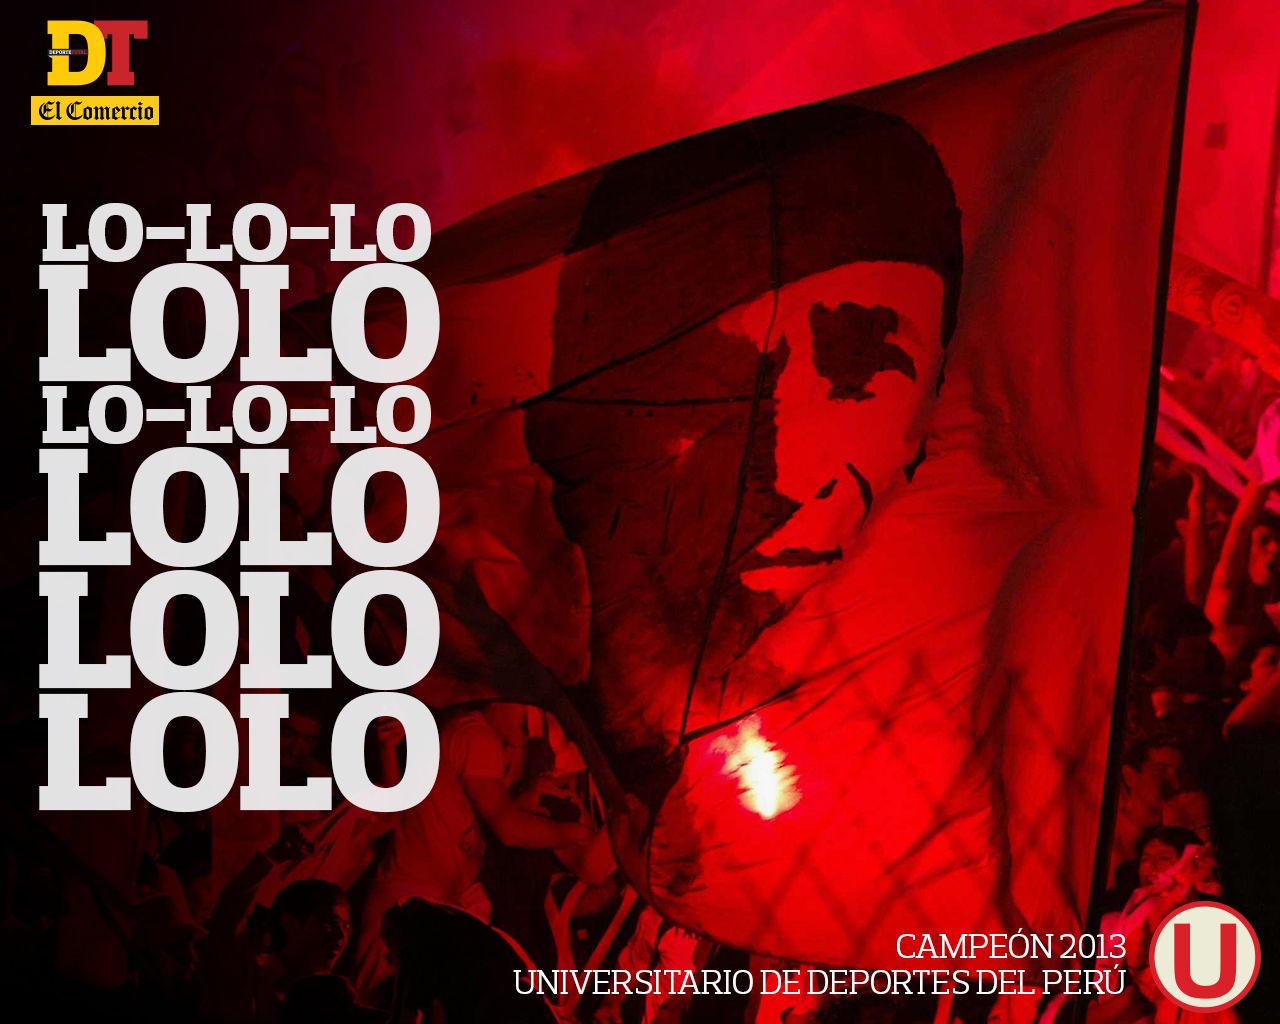 Descarga aquí los wallpaper de la 'U' campeón 2013. El Comercio Peru